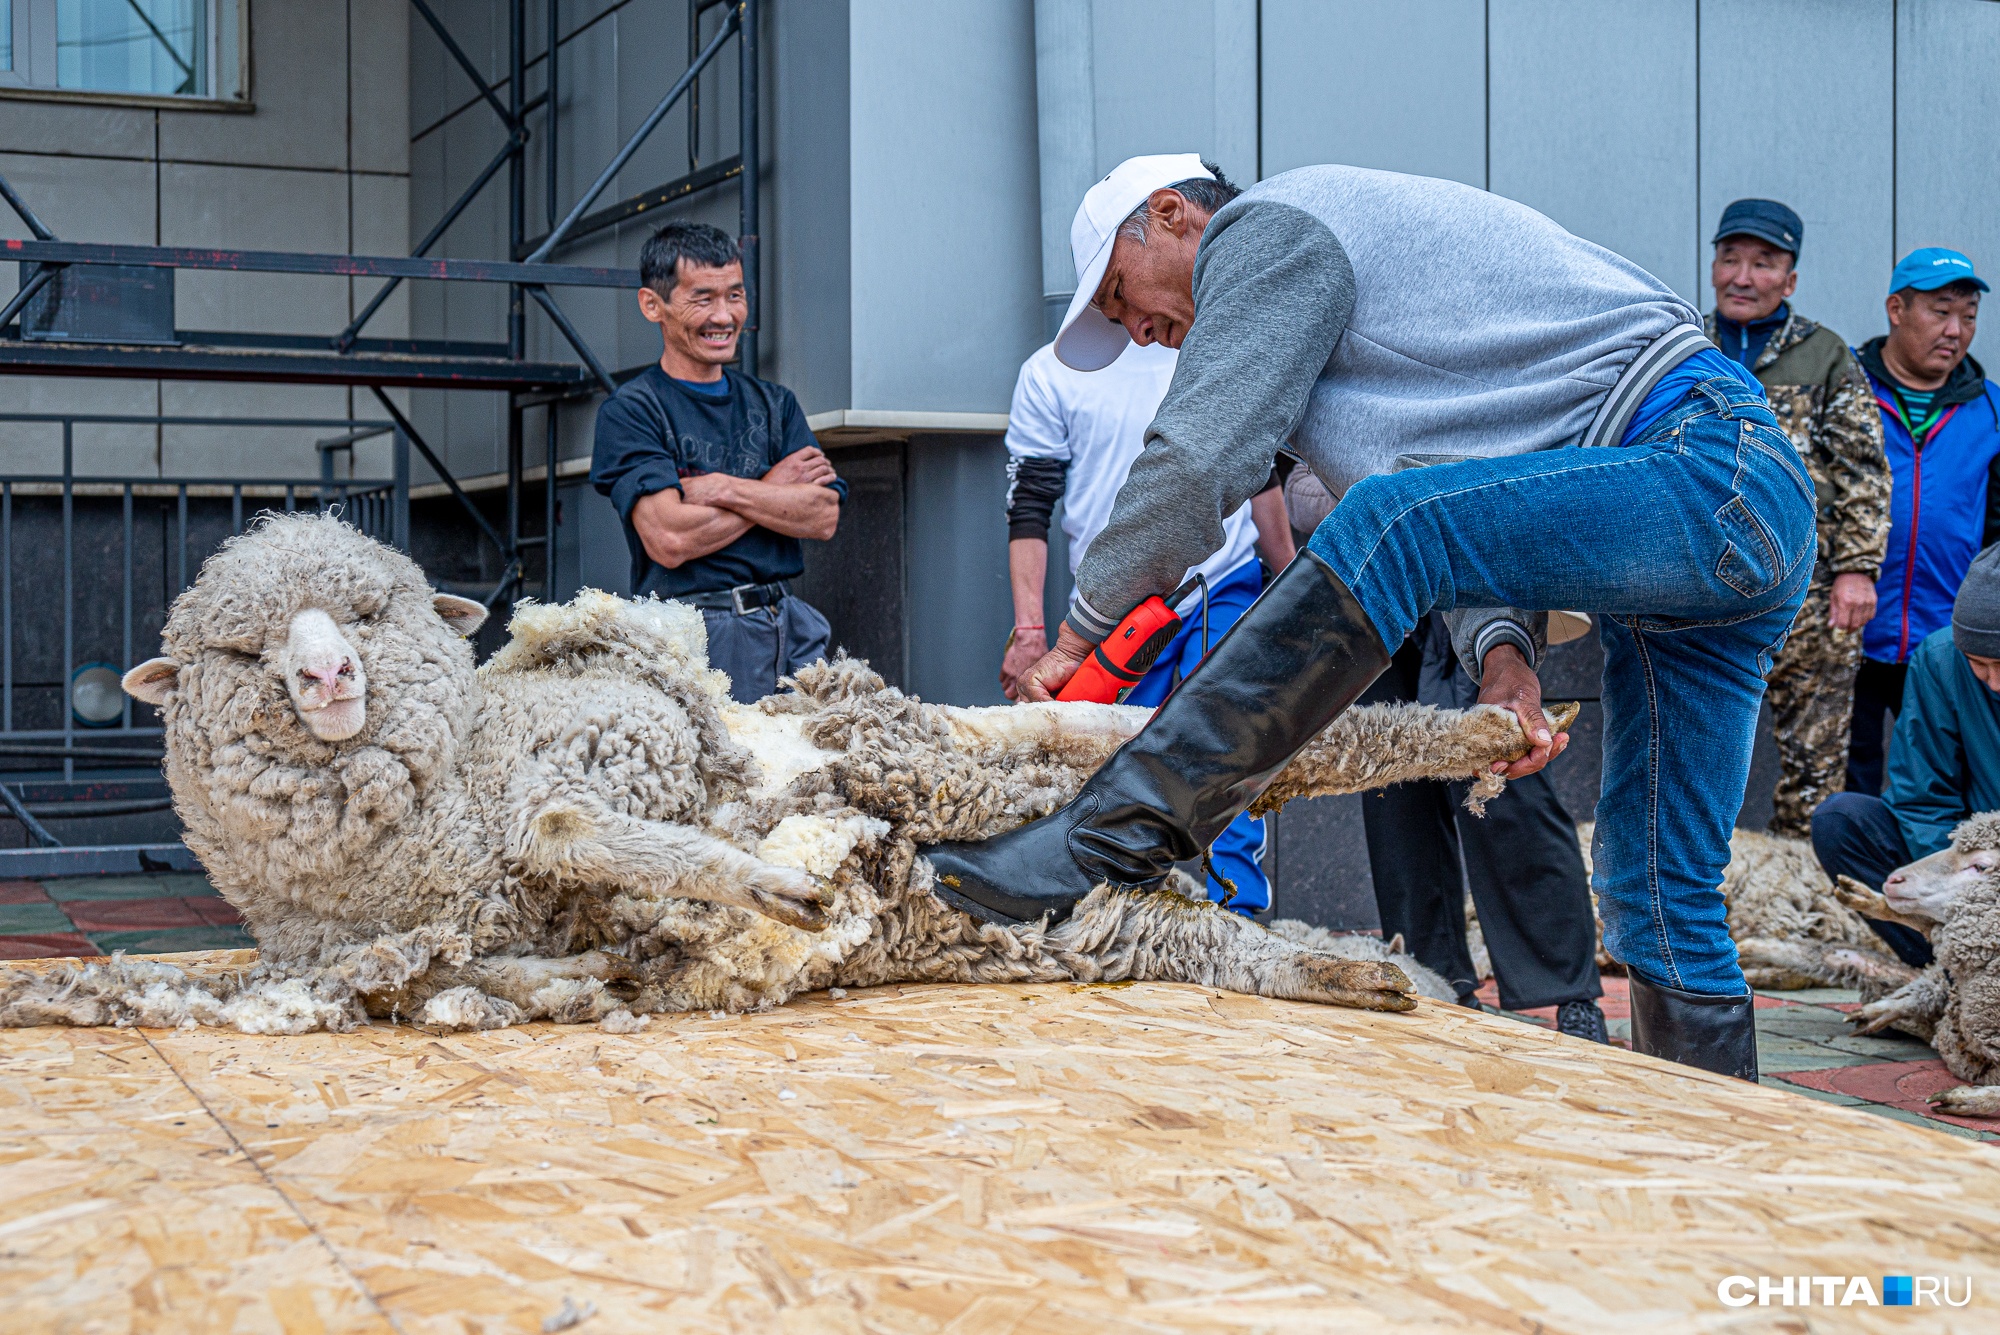 Во многих поселениях стрижка одной овцы стоит 100 рублей — совсем смешные деньги по сравнению с парикмахерскими для людей